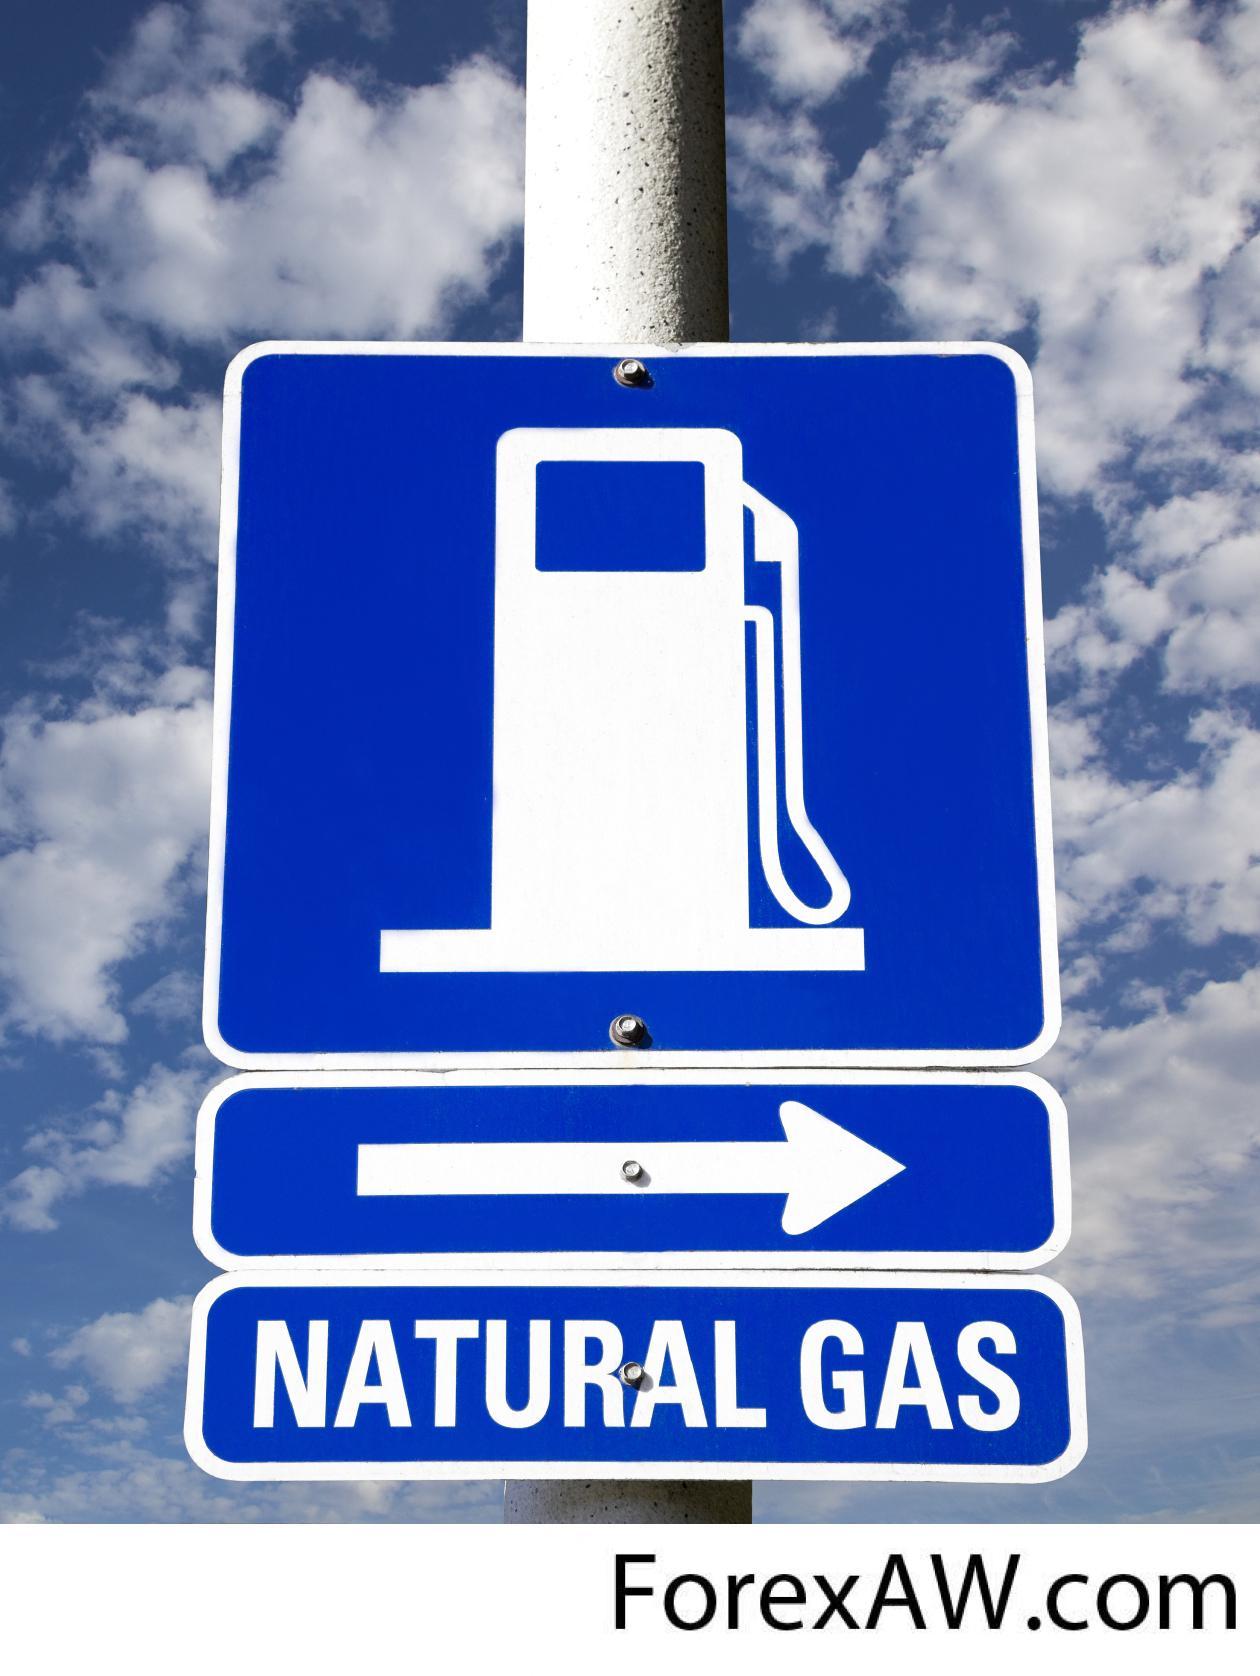 В качестве газового топлива используют. ГАЗ топливо. Газовый бензин. Природный ГАЗ автозаправка. Газовое моторное топливо.